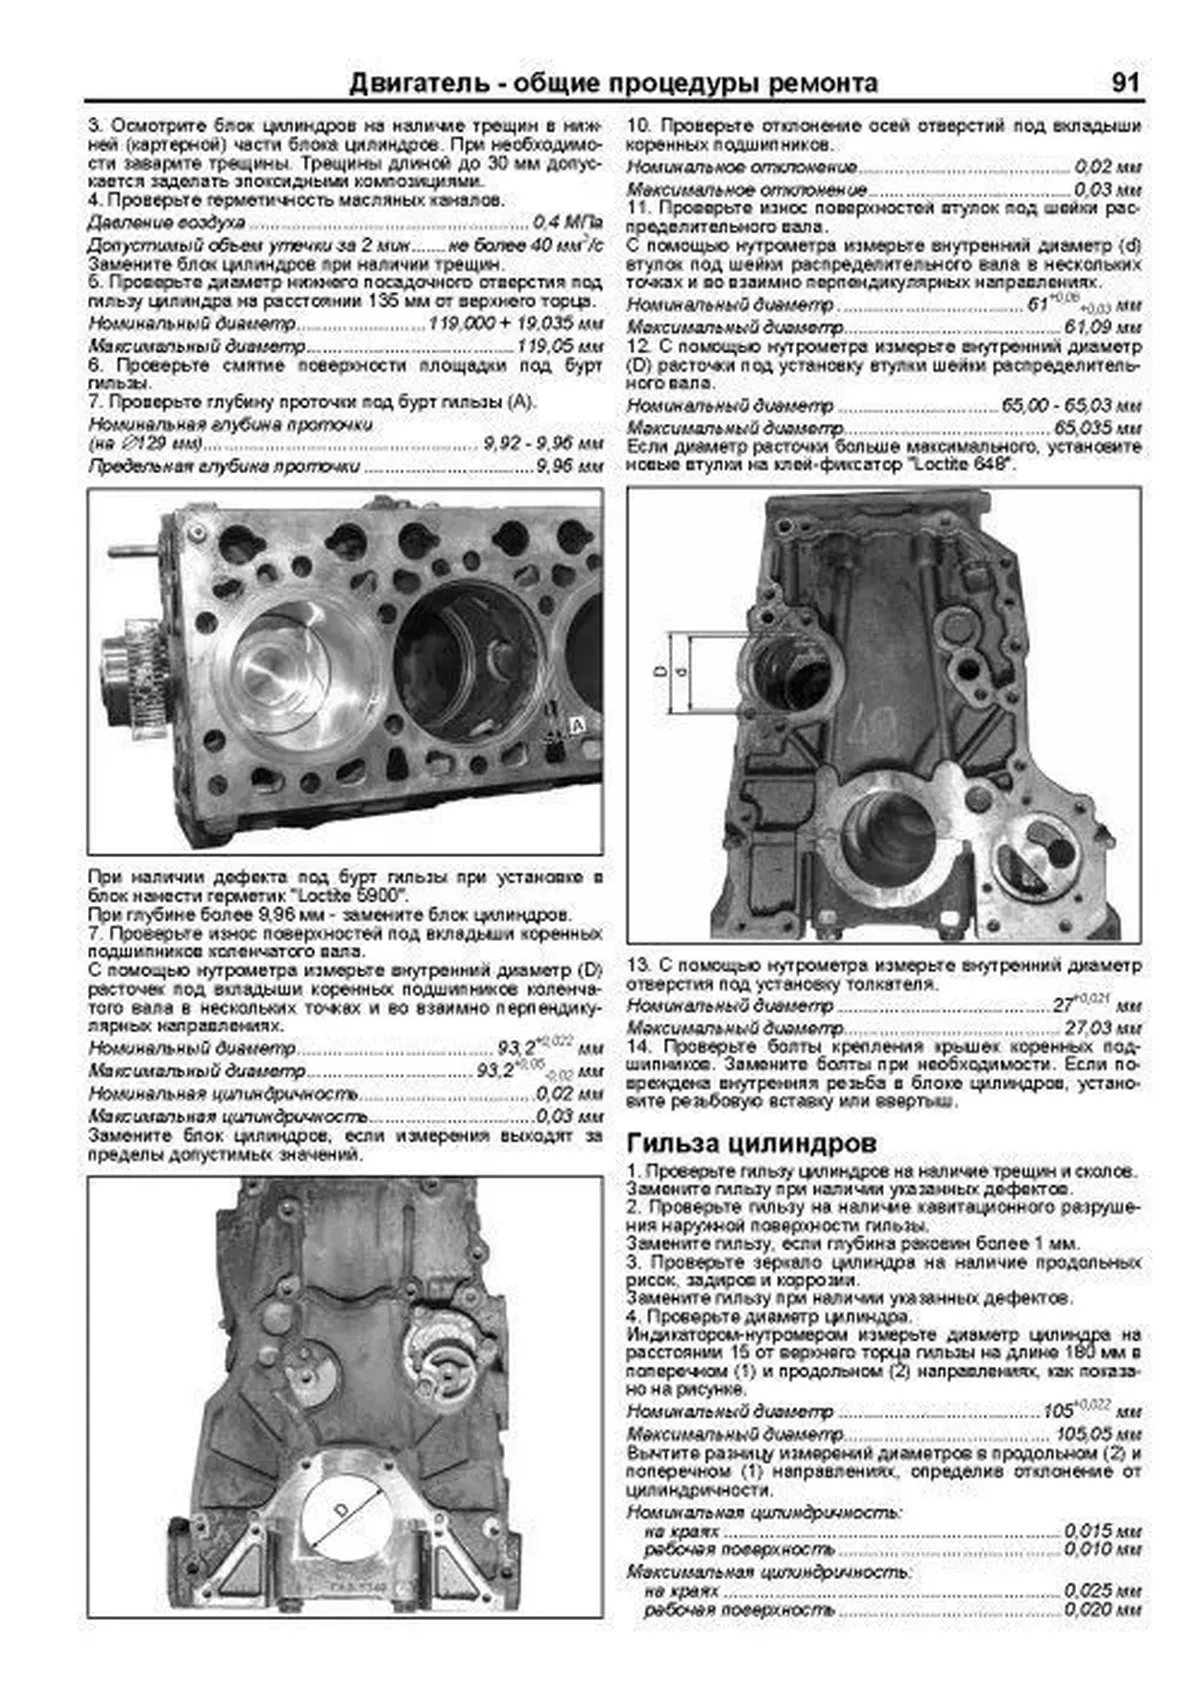 Двигатели ЯМЗ 534 / 536 рем., экспл., то | Легион-Автодата 